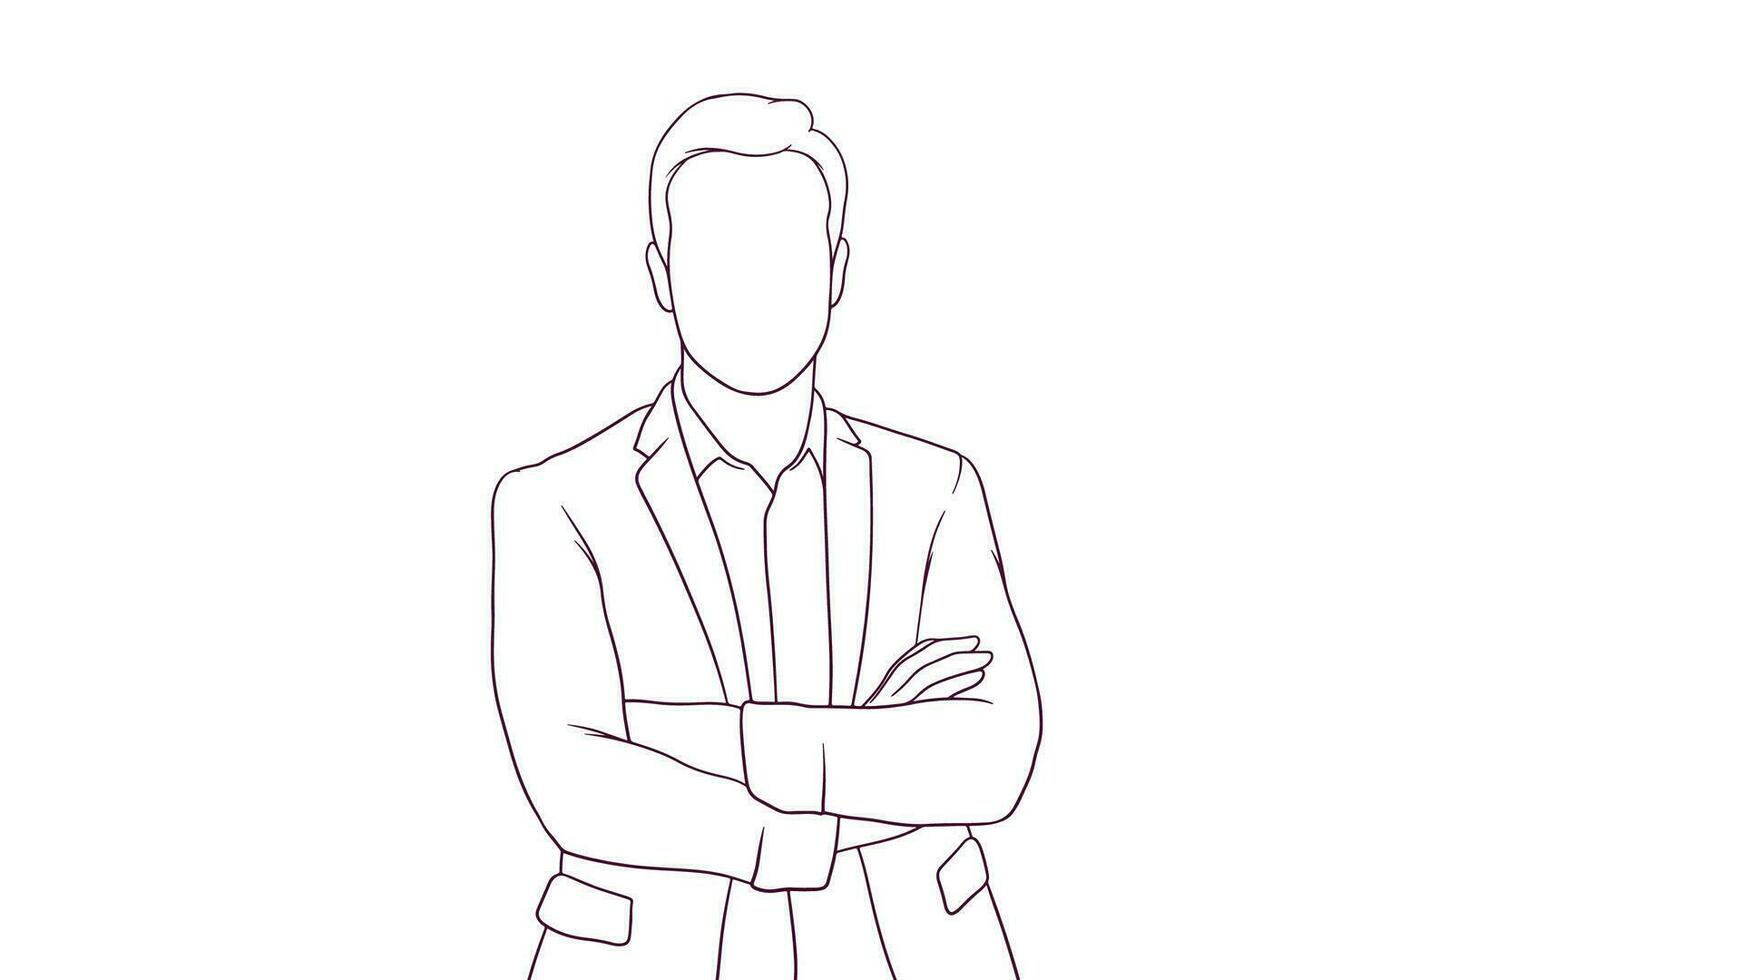 confidente empresario con cruzado brazos, mano dibujado estilo vector ilustración